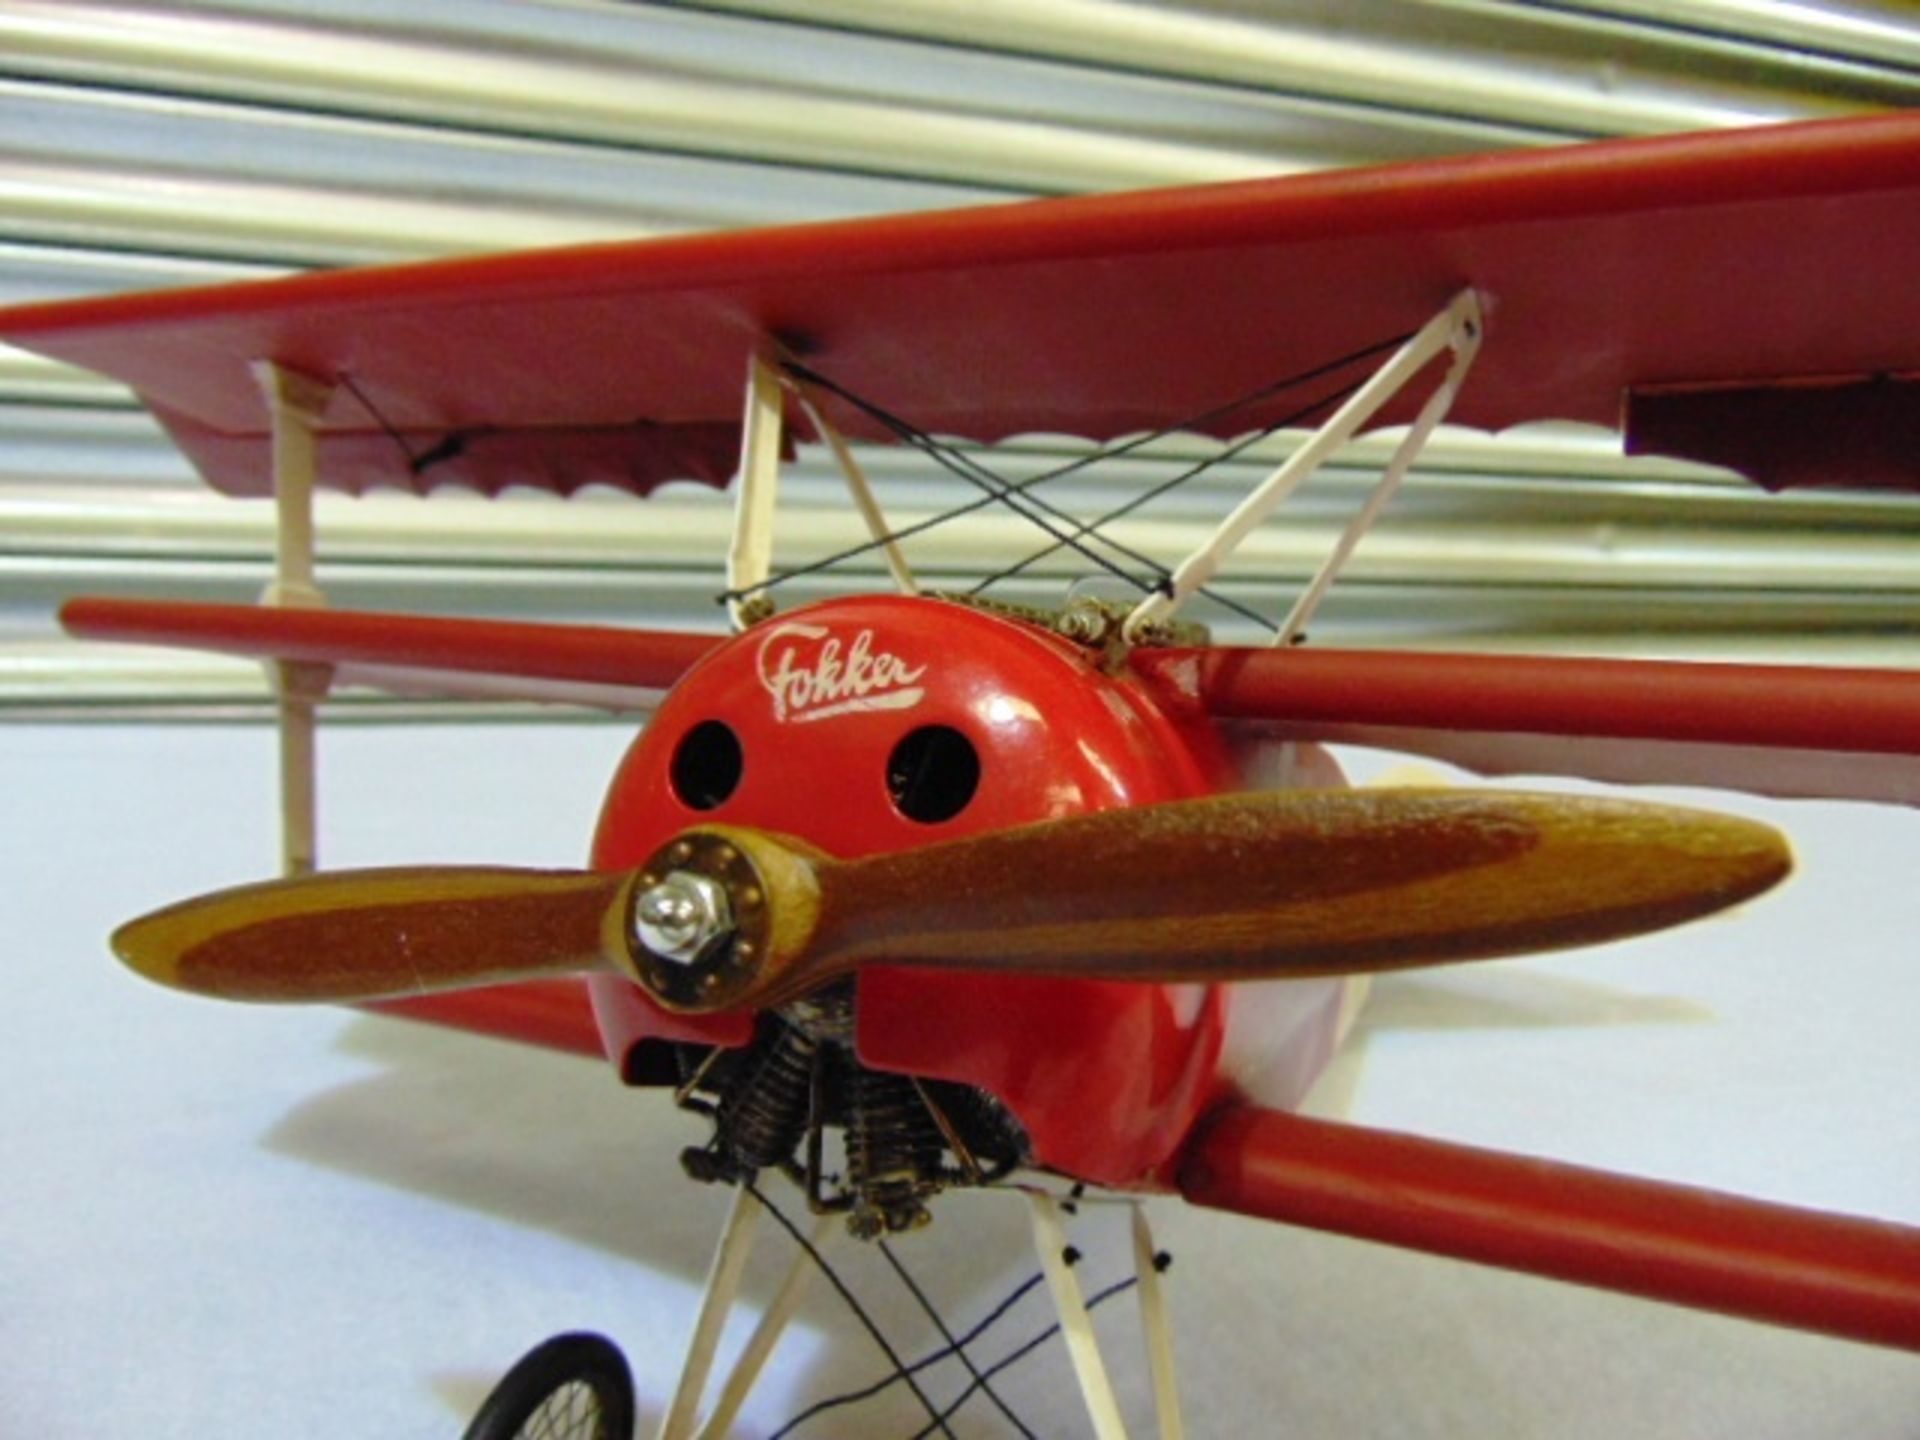 Legendary Red Baron's Fokker Triplane Detailed Model - Image 3 of 8